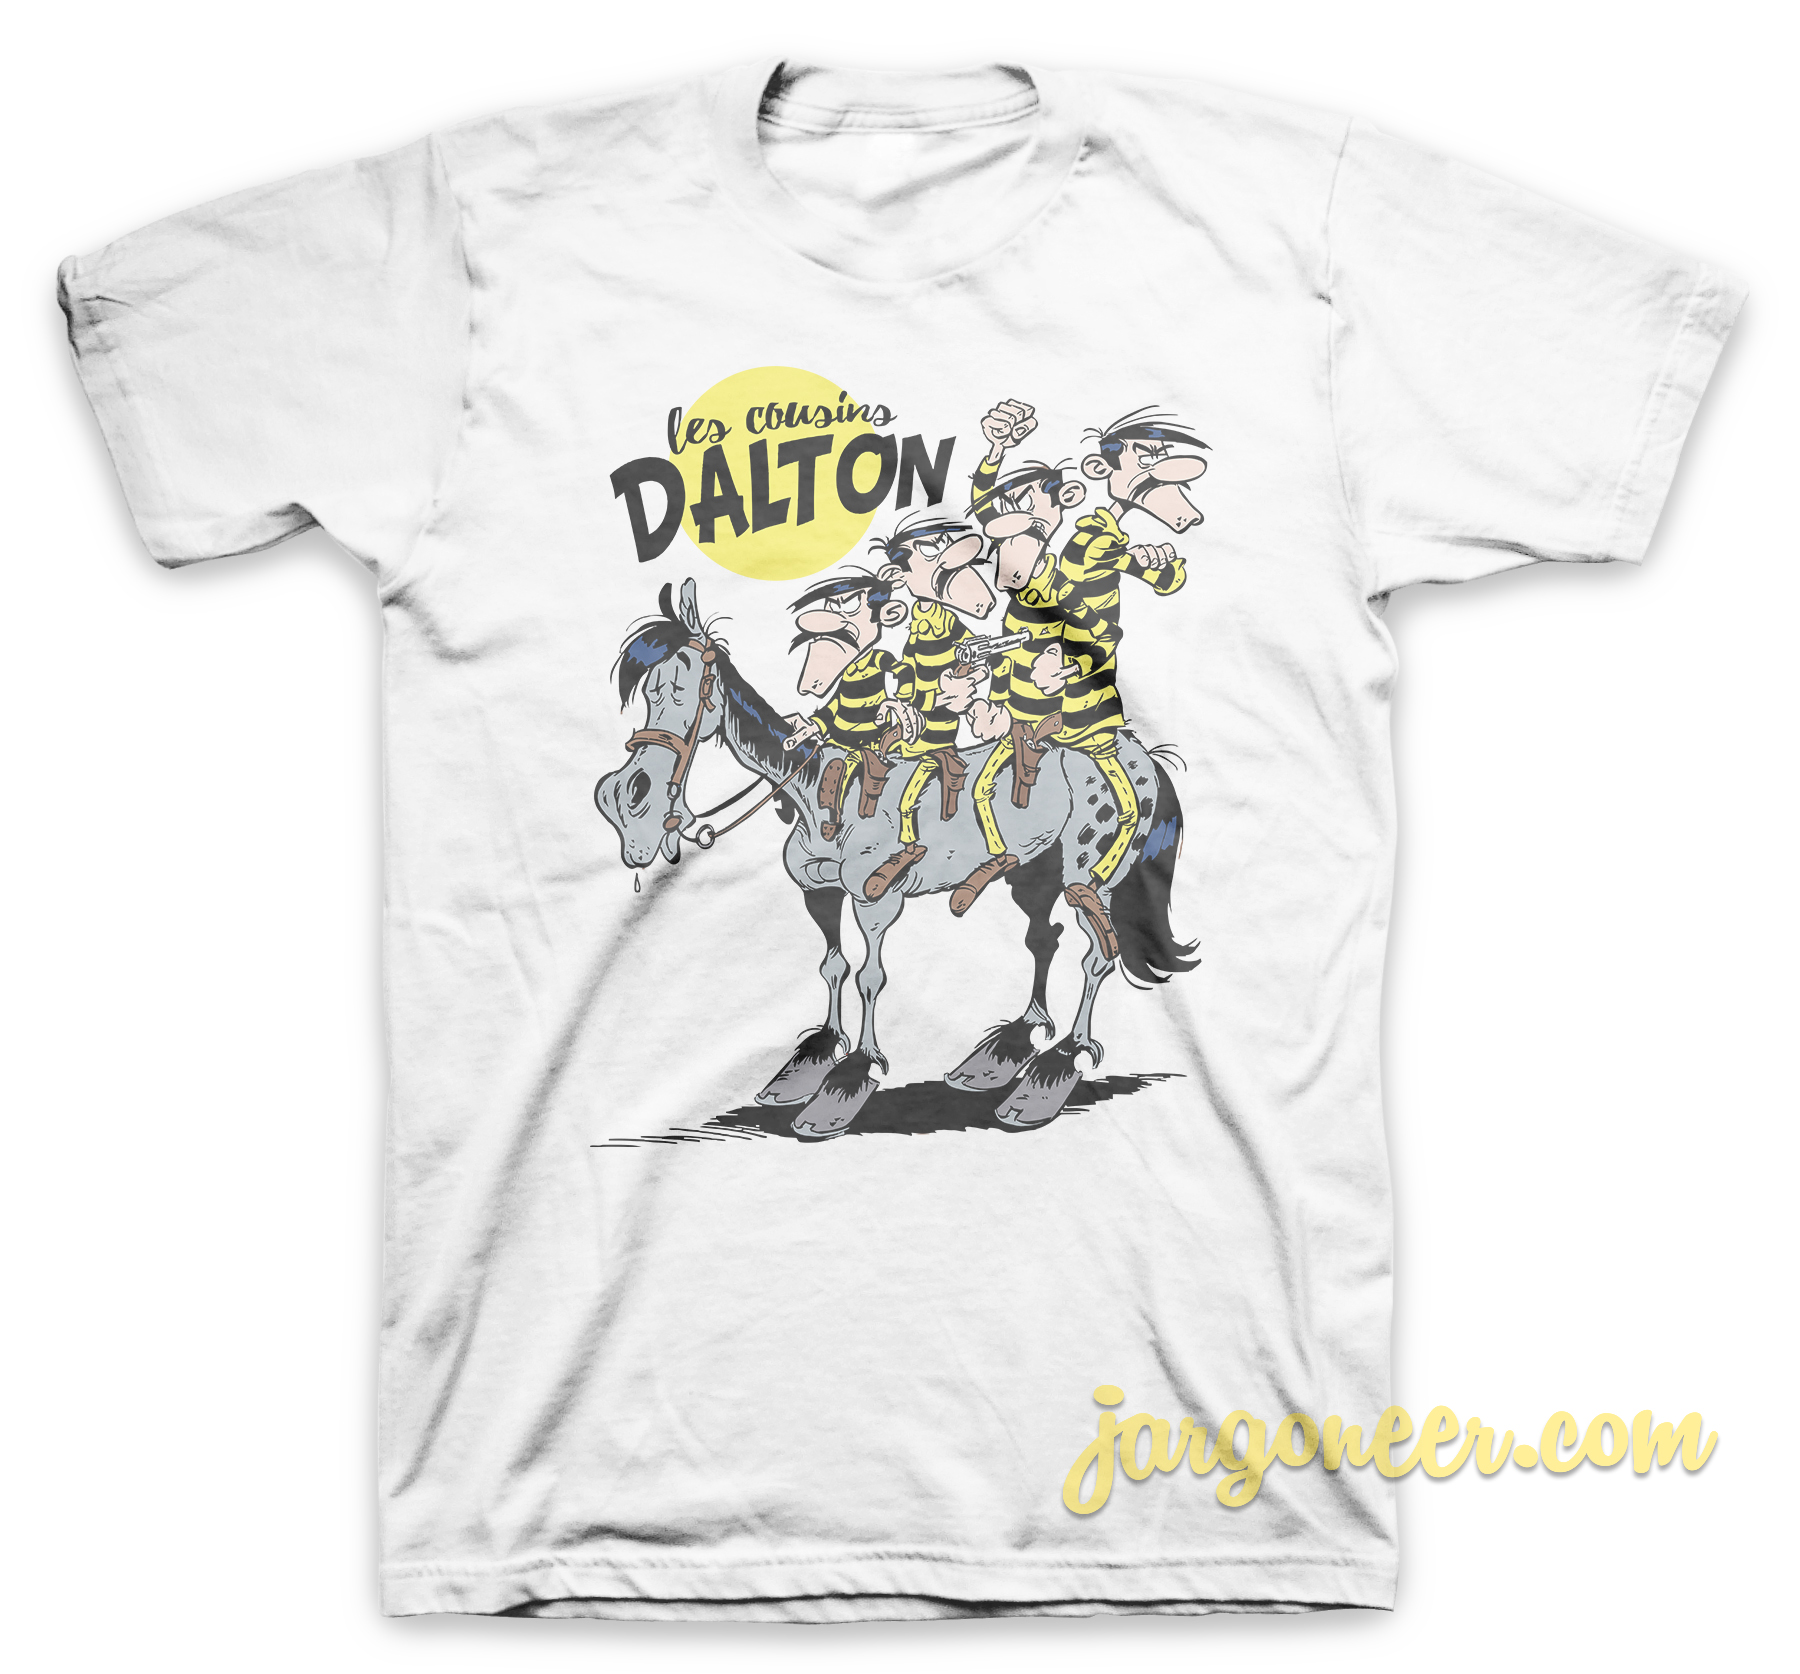 Les Cousins Dalton White T Shirt - Shop Unique Graphic Cool Shirt Designs